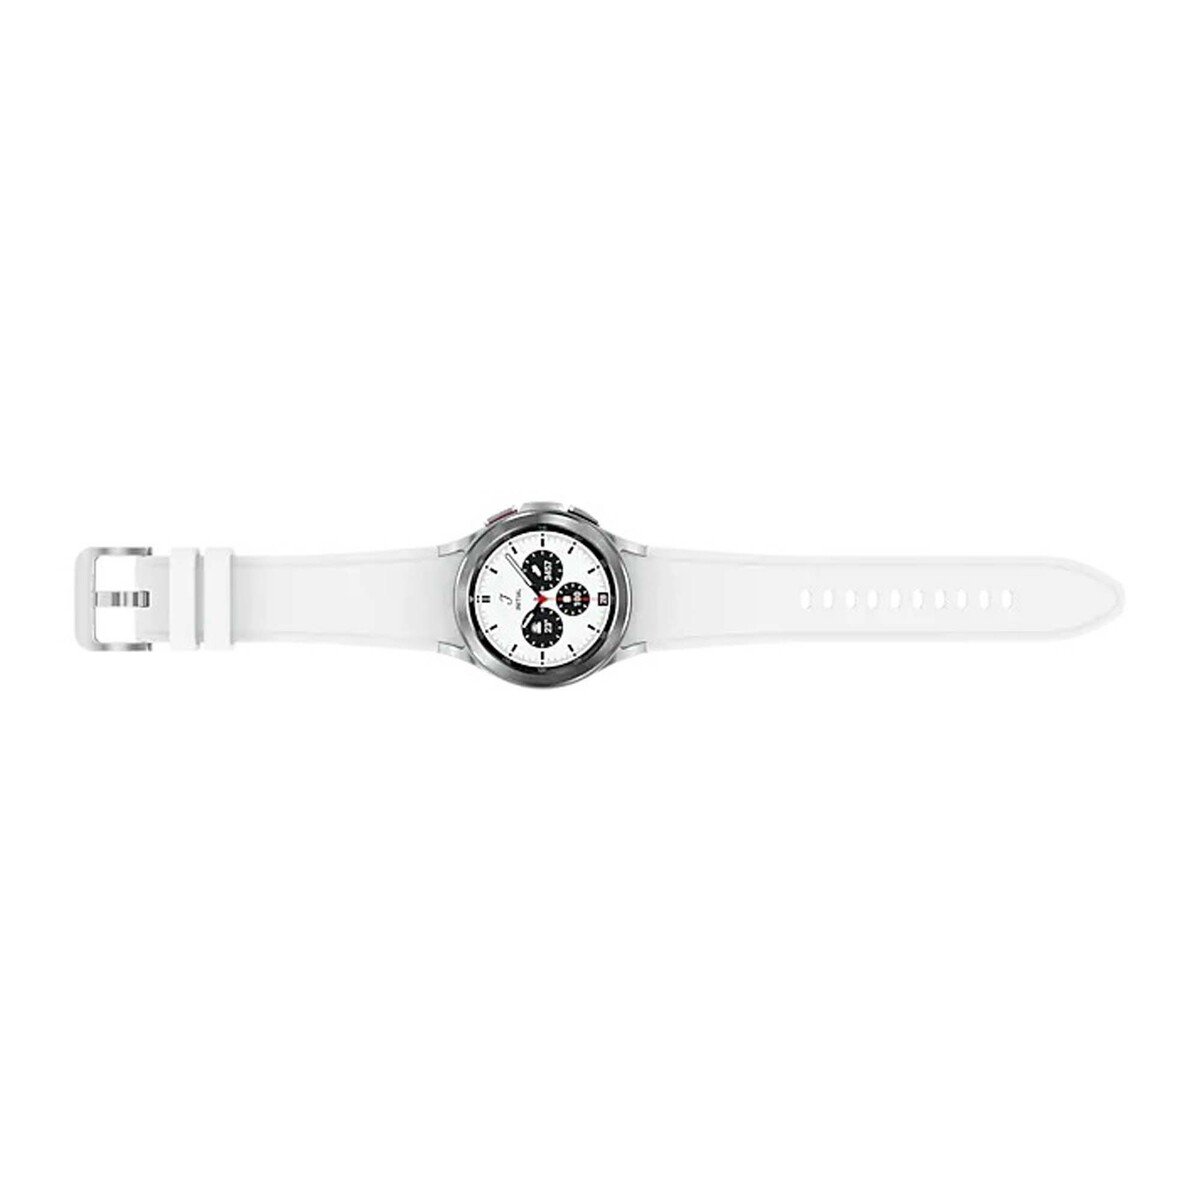 ساعة سامسونج جالاكسي الإصدار 4 تصميم كلاسيكي إس إم - 42 مم - فضي - SM-R880